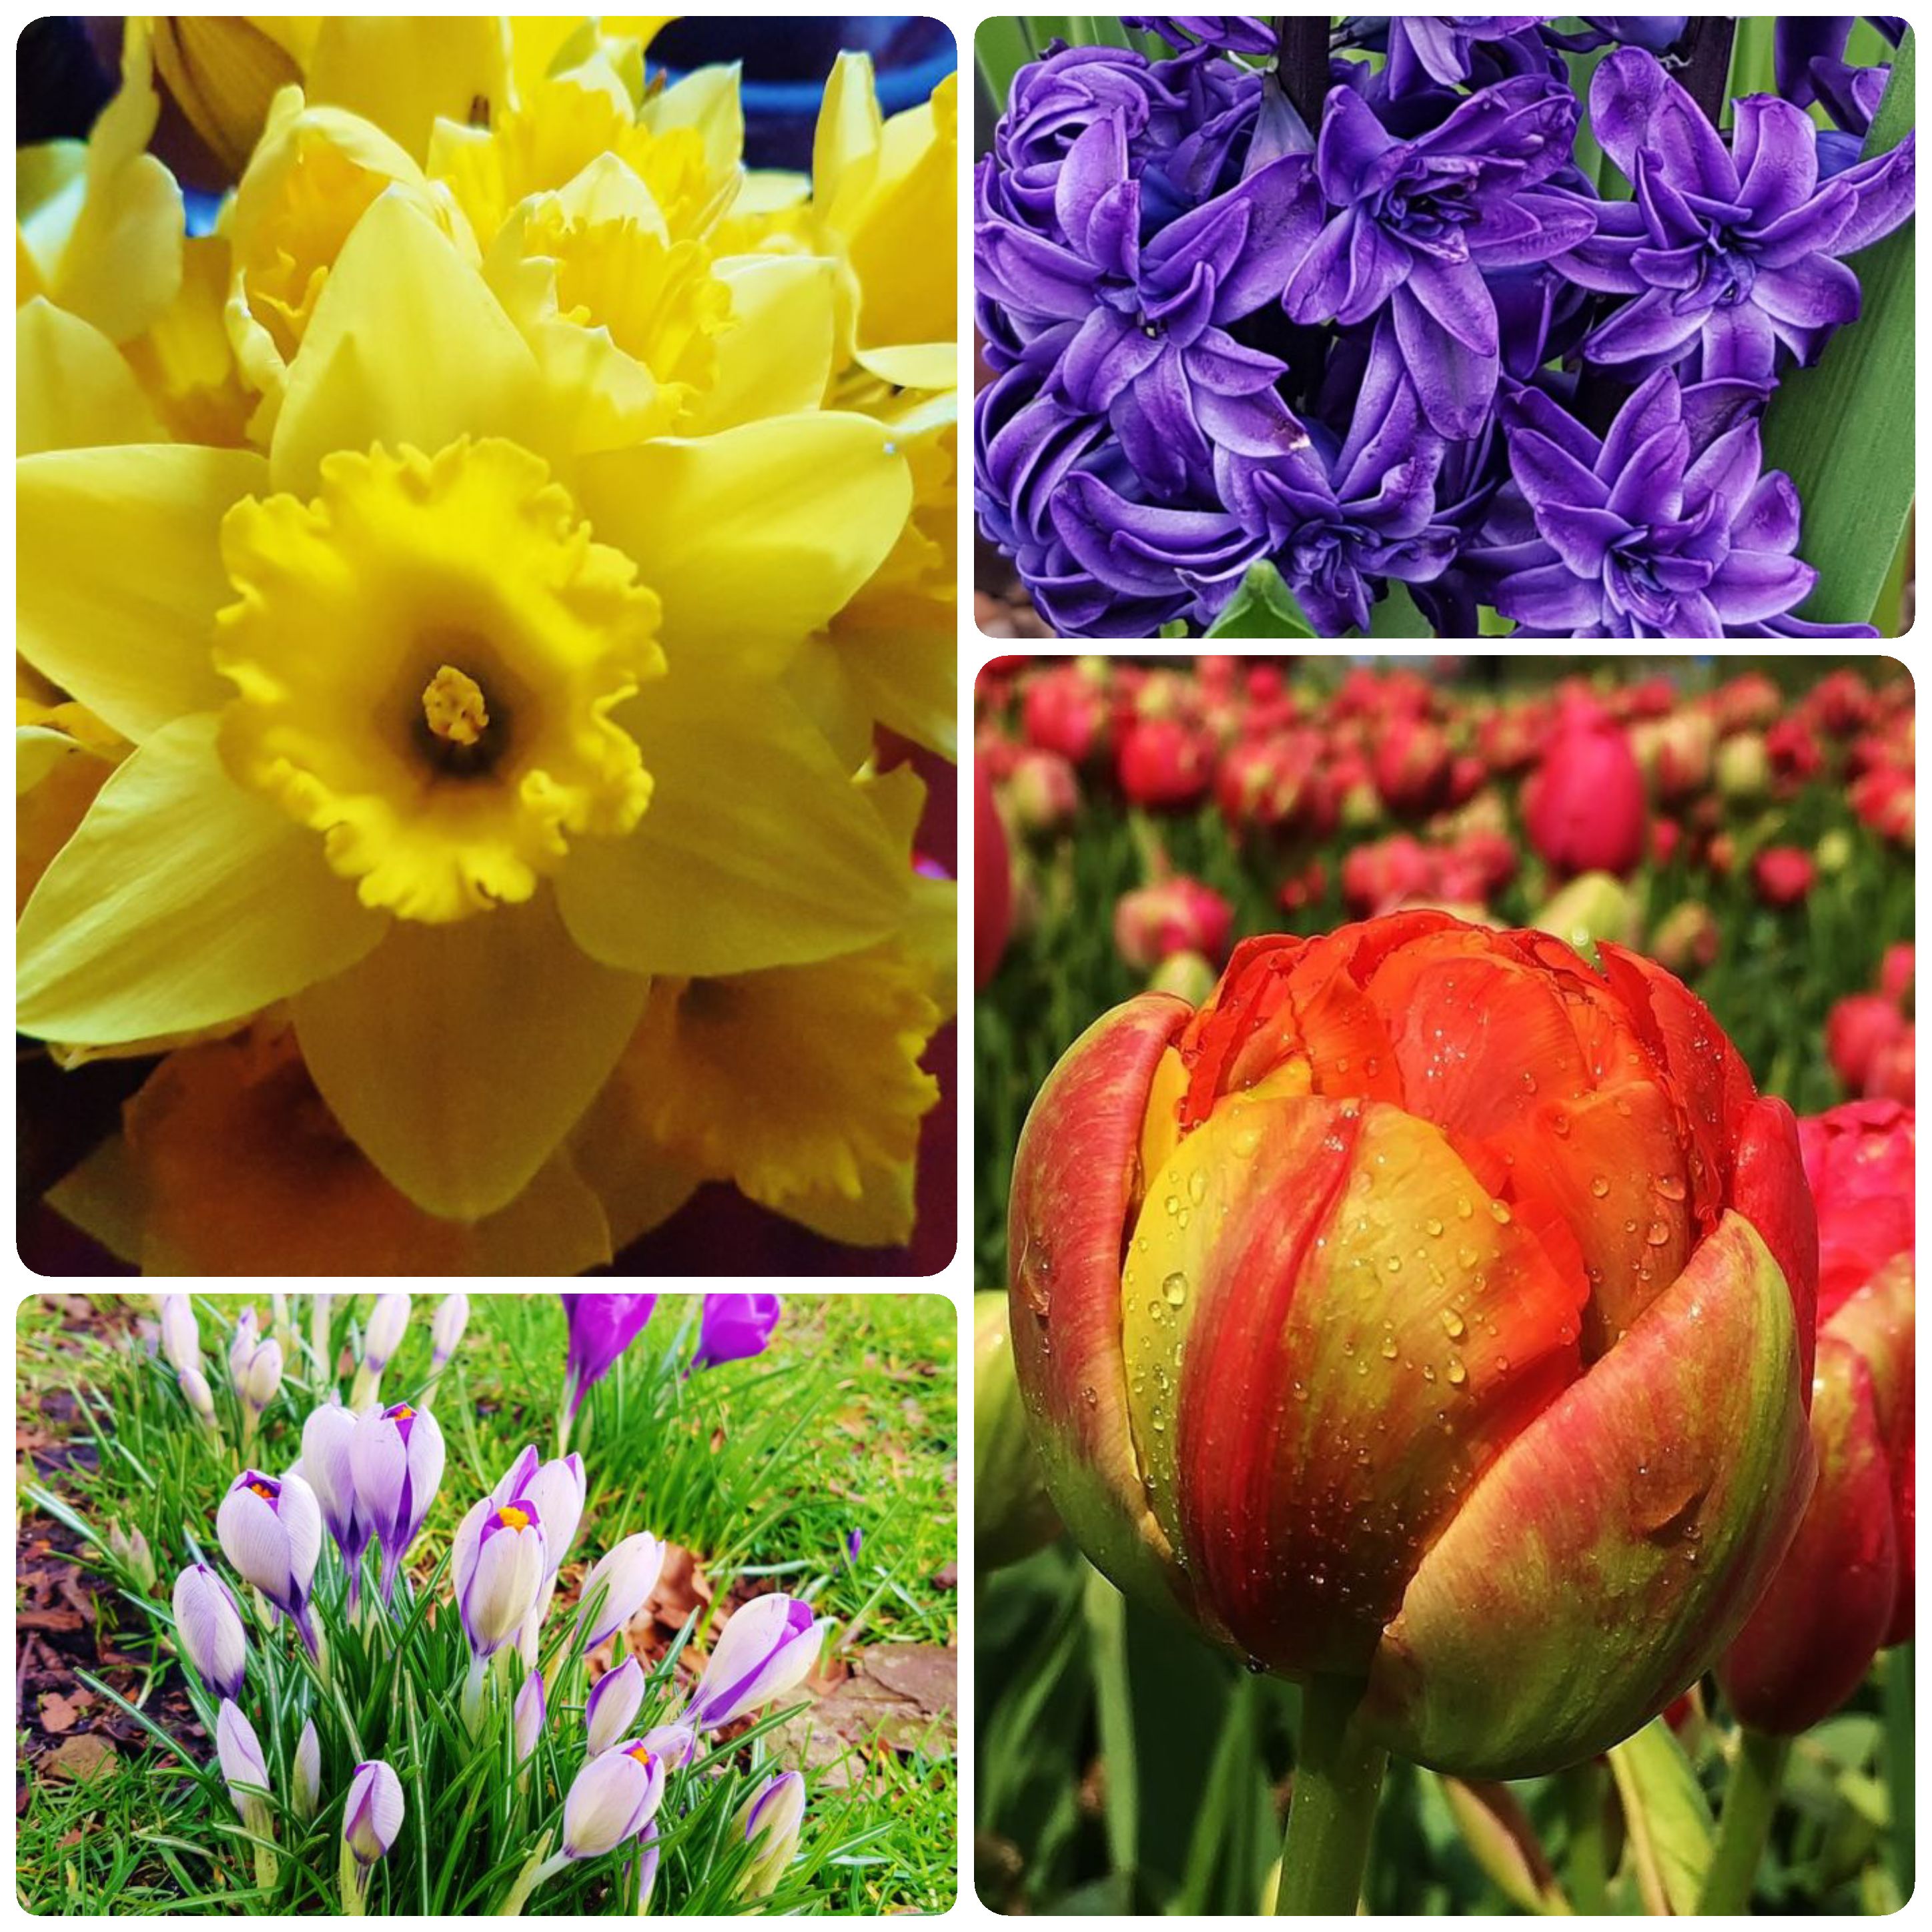 Osterblumen, Blumen zu Ostern, Narzissen, Tulpen, Hyazinthen, Krokus